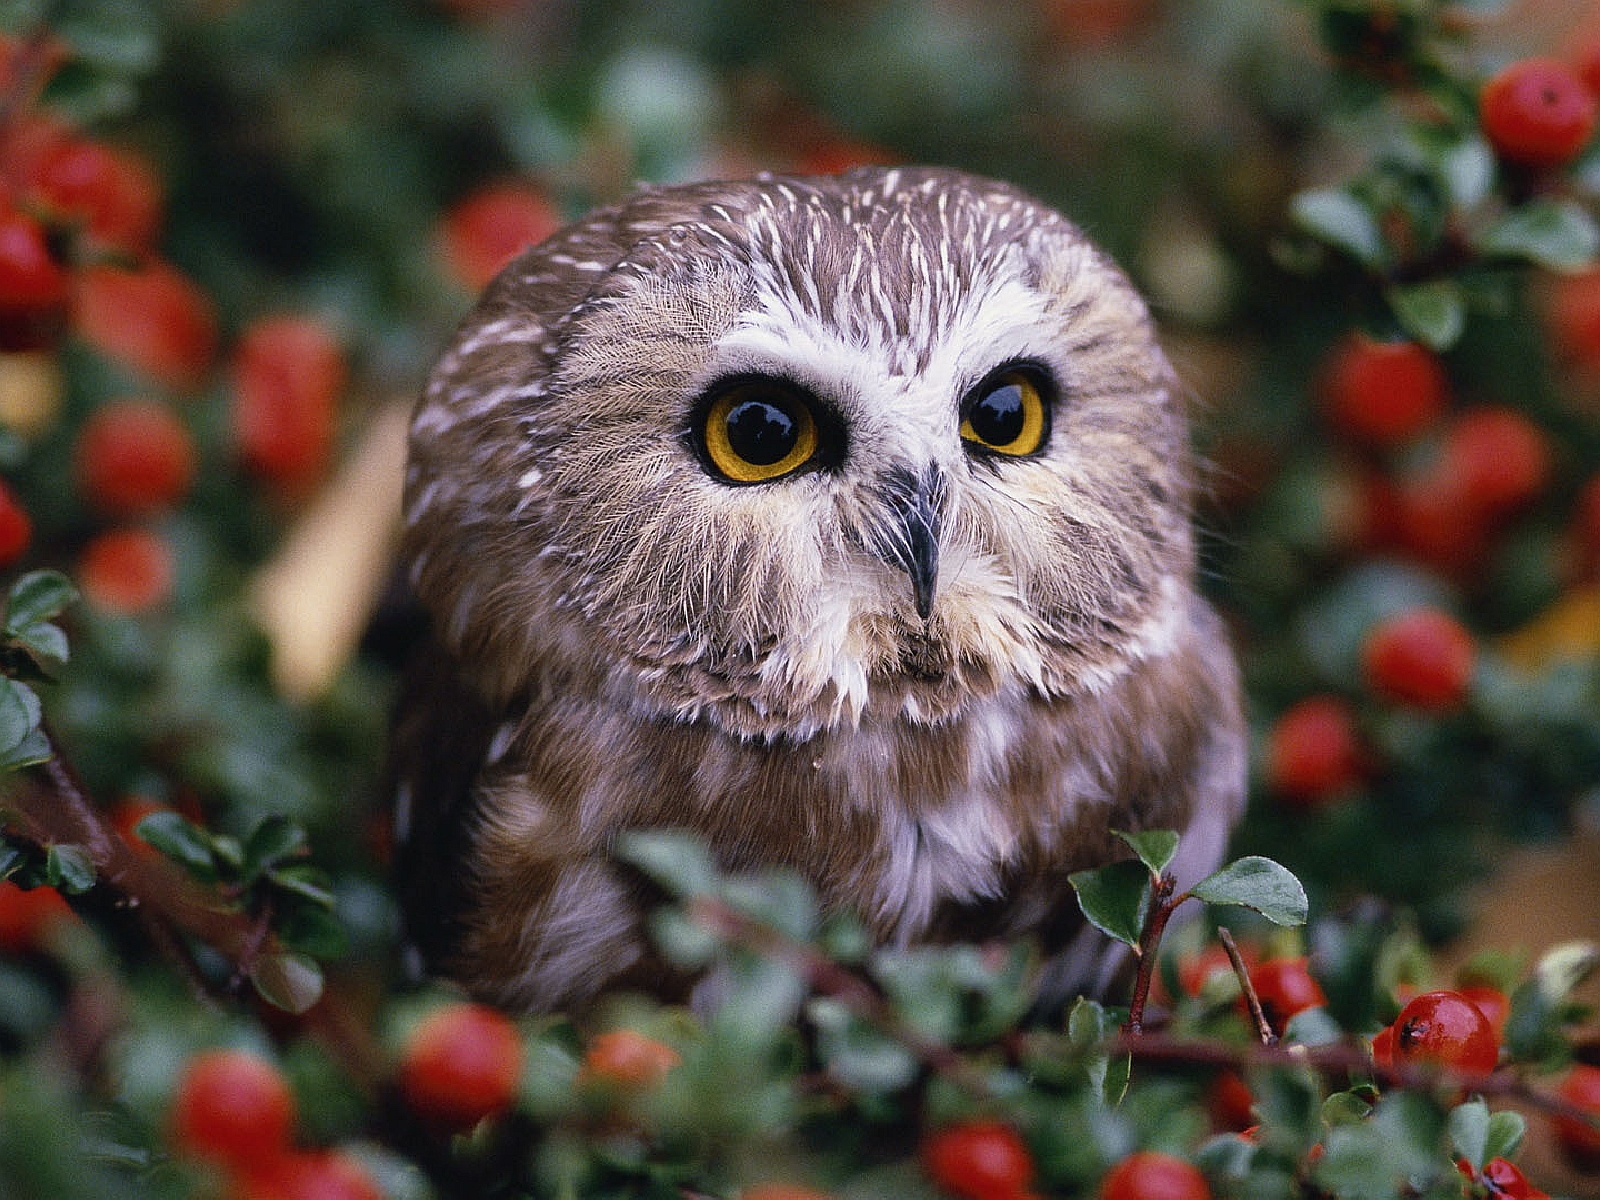  39 Cute Baby Owl Wallpaper  on WallpaperSafari